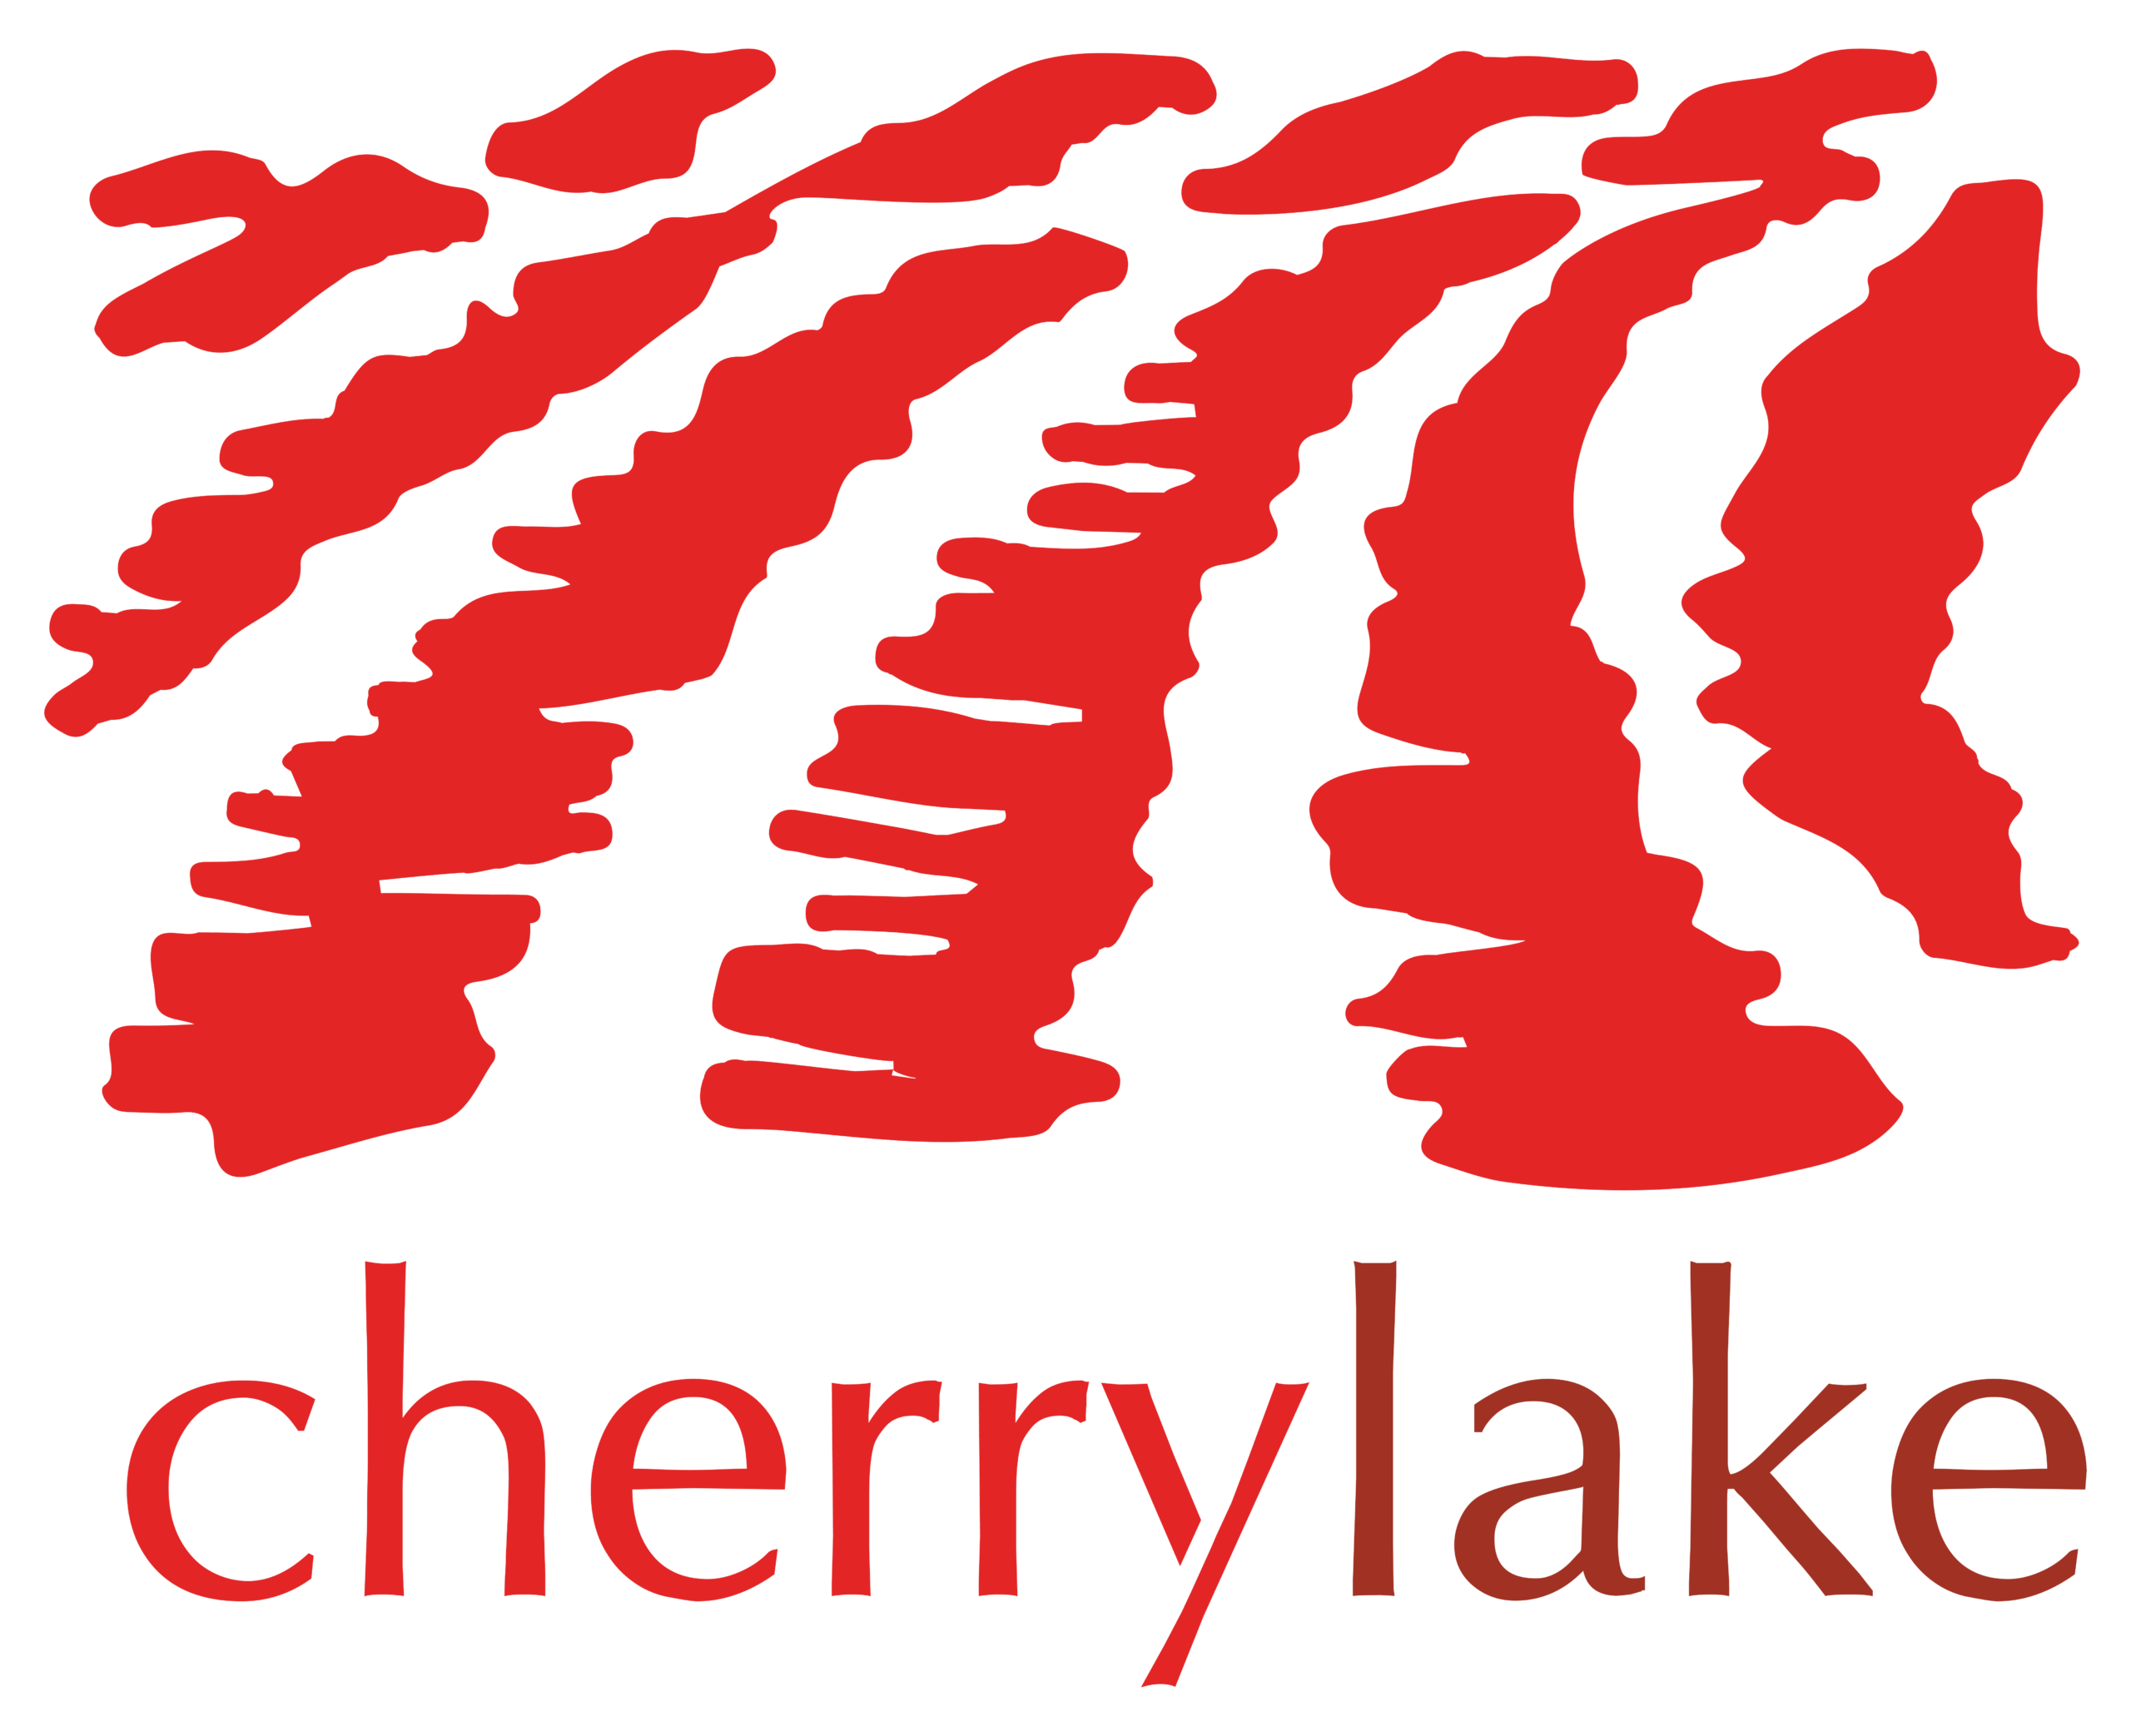 Cherrylake